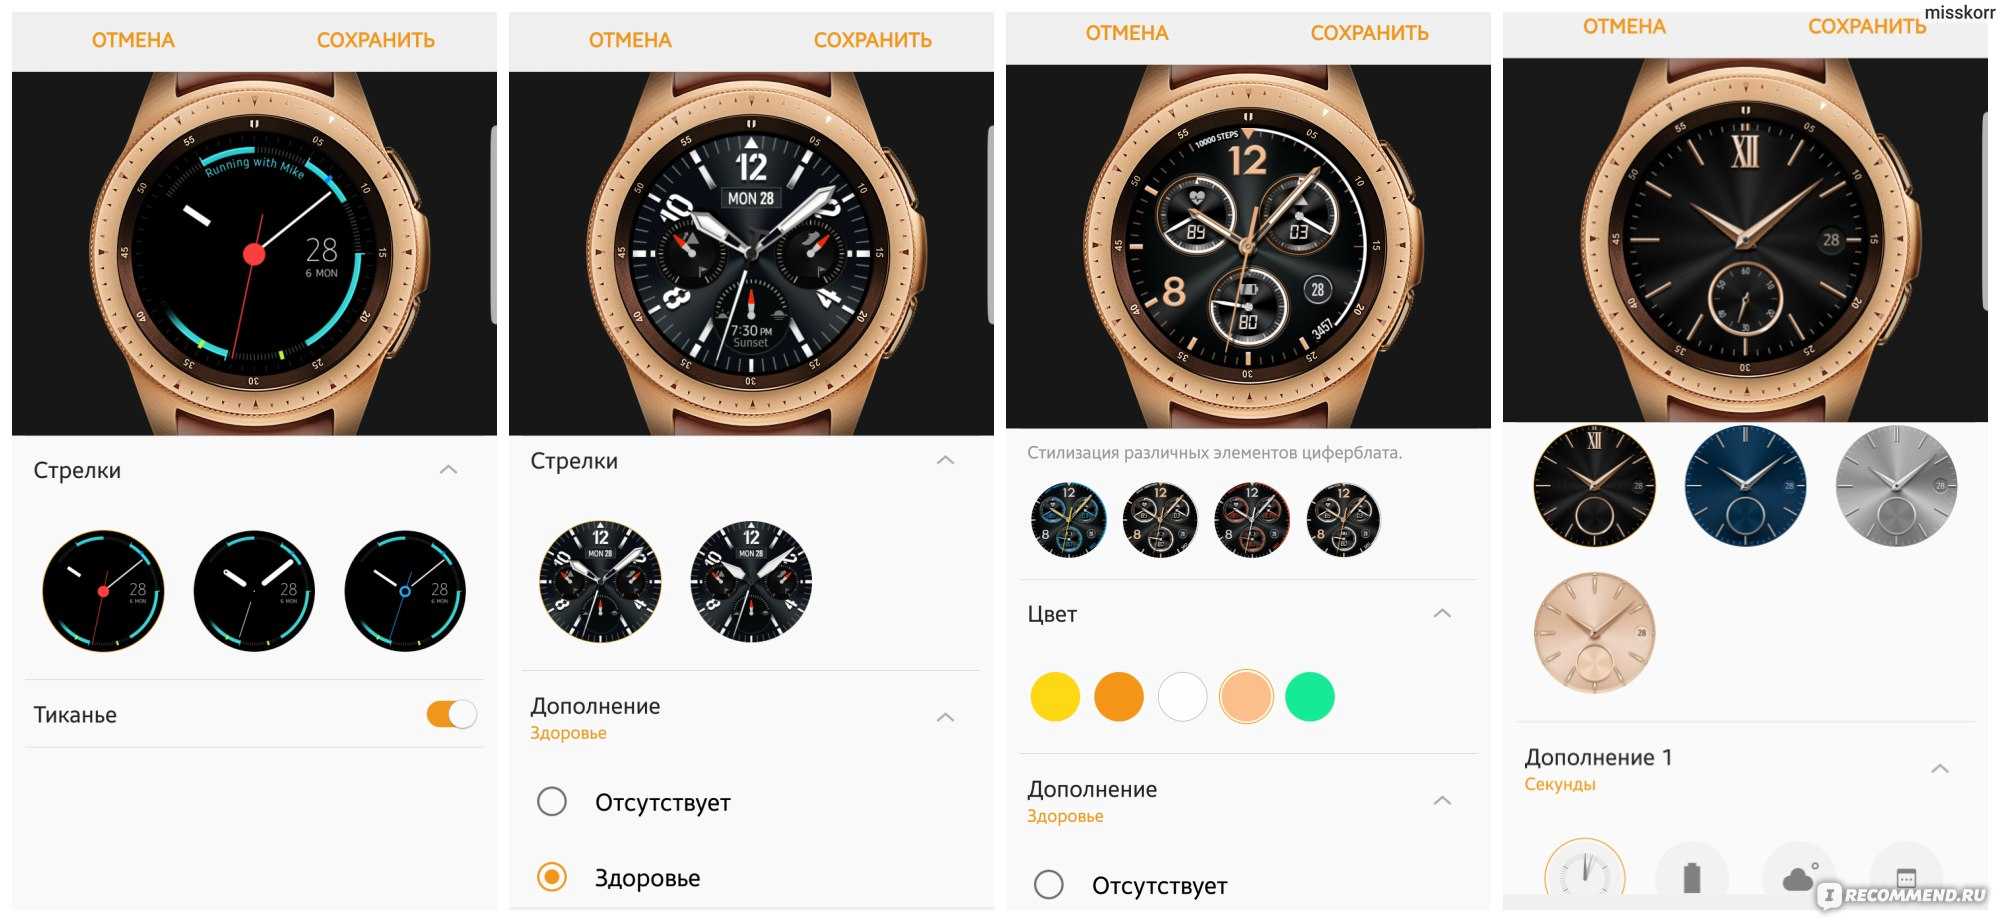 Samsung galaxy watch сравнение. Сравнение часов самсунг. Часы с синхронизацией от смартфона. Эволюция Galaxy watch. Предустановленные циферблаты самсунг вотч Актив 3.